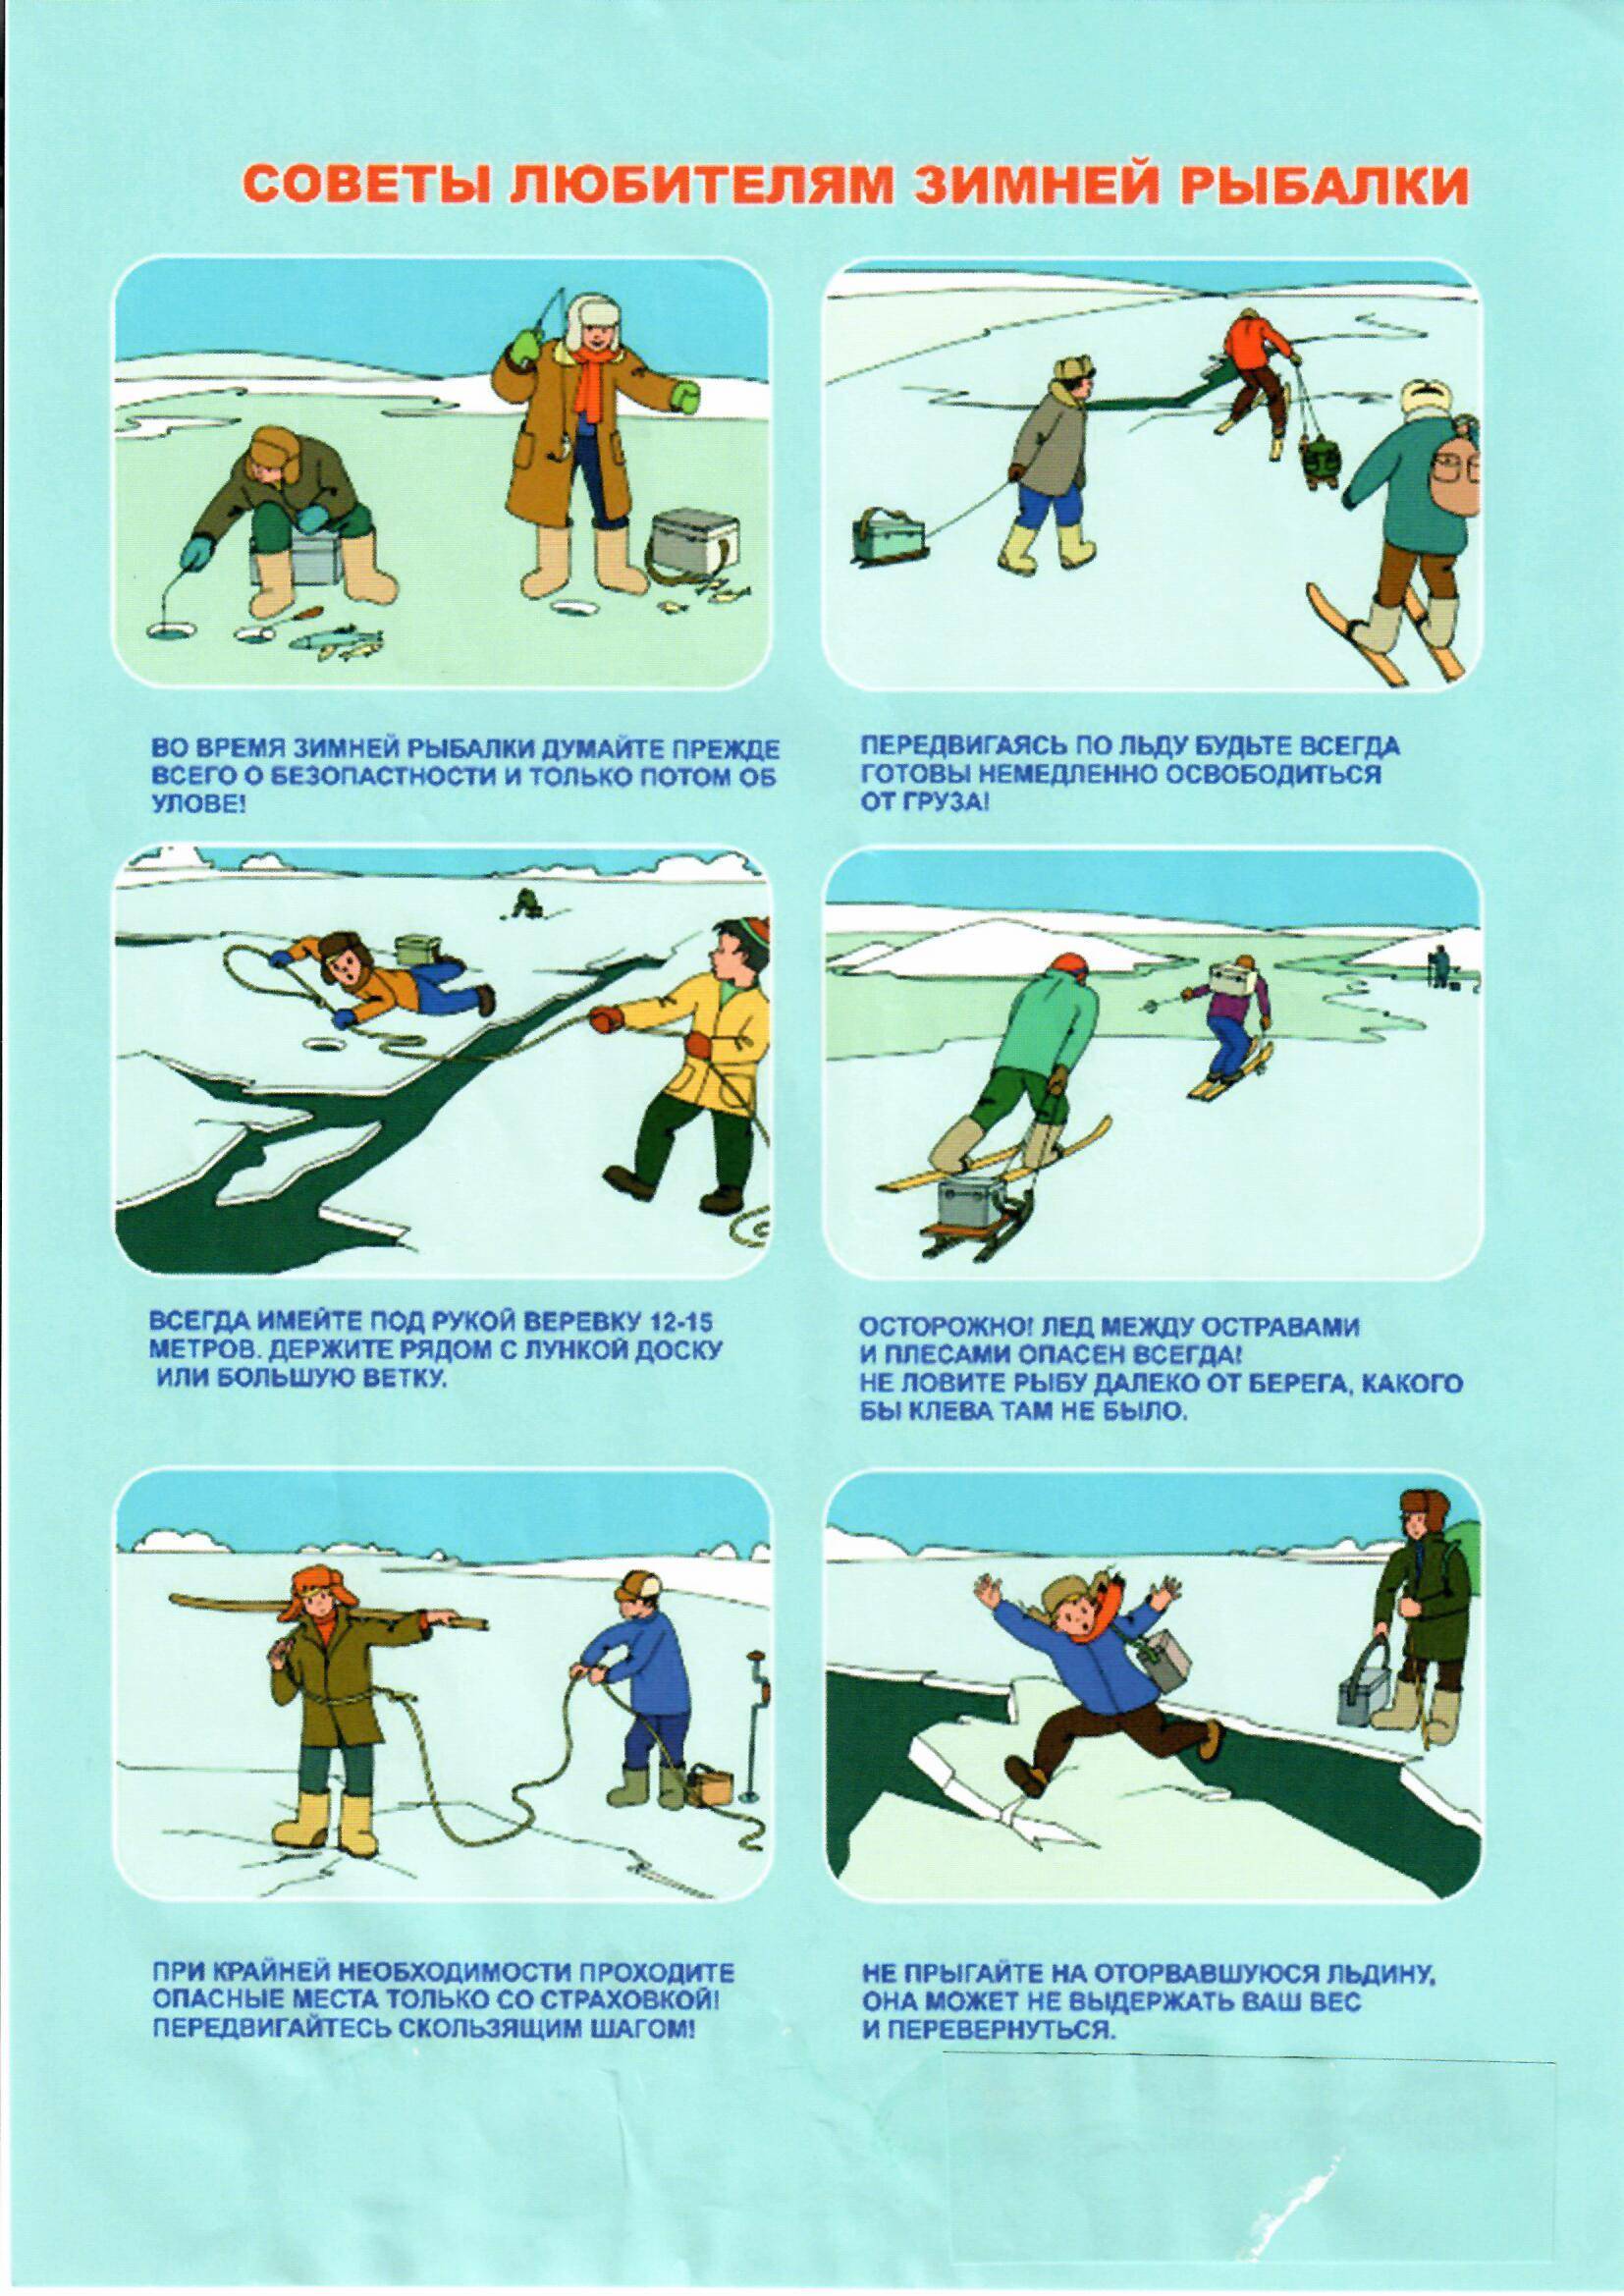 Правила поведения на льду зимой для школьников: тонкий лед, памятка для школьников